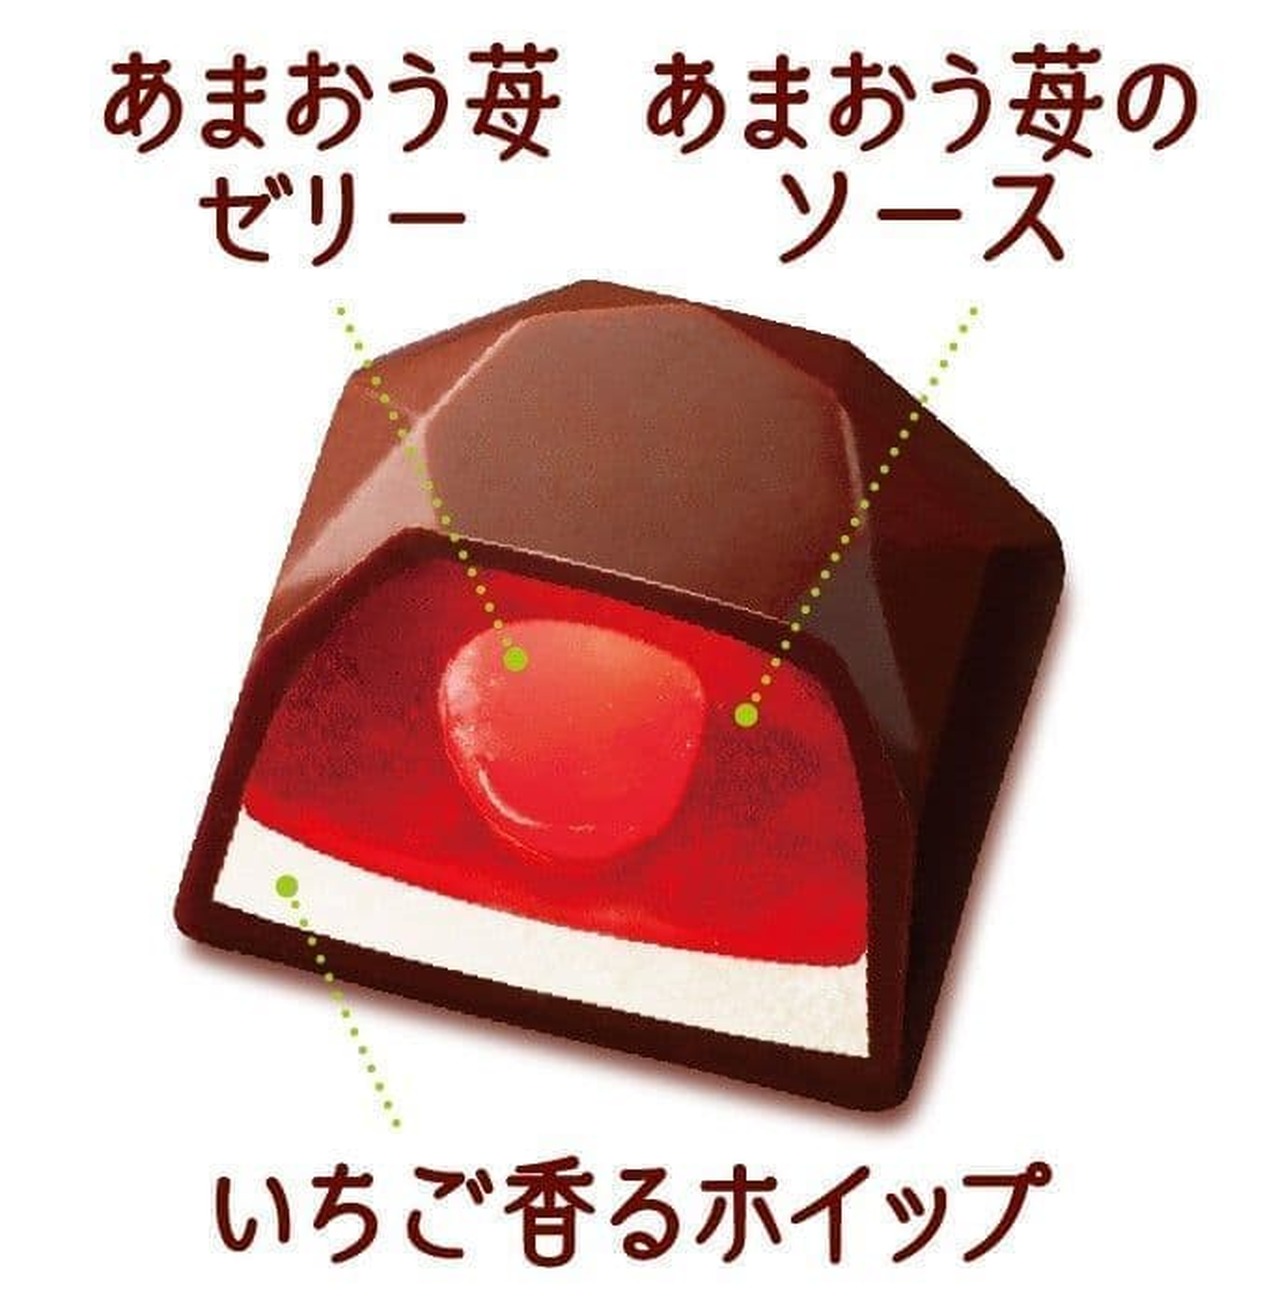 Fujiya "Look A grain of luxury (Amaou strawberry)"